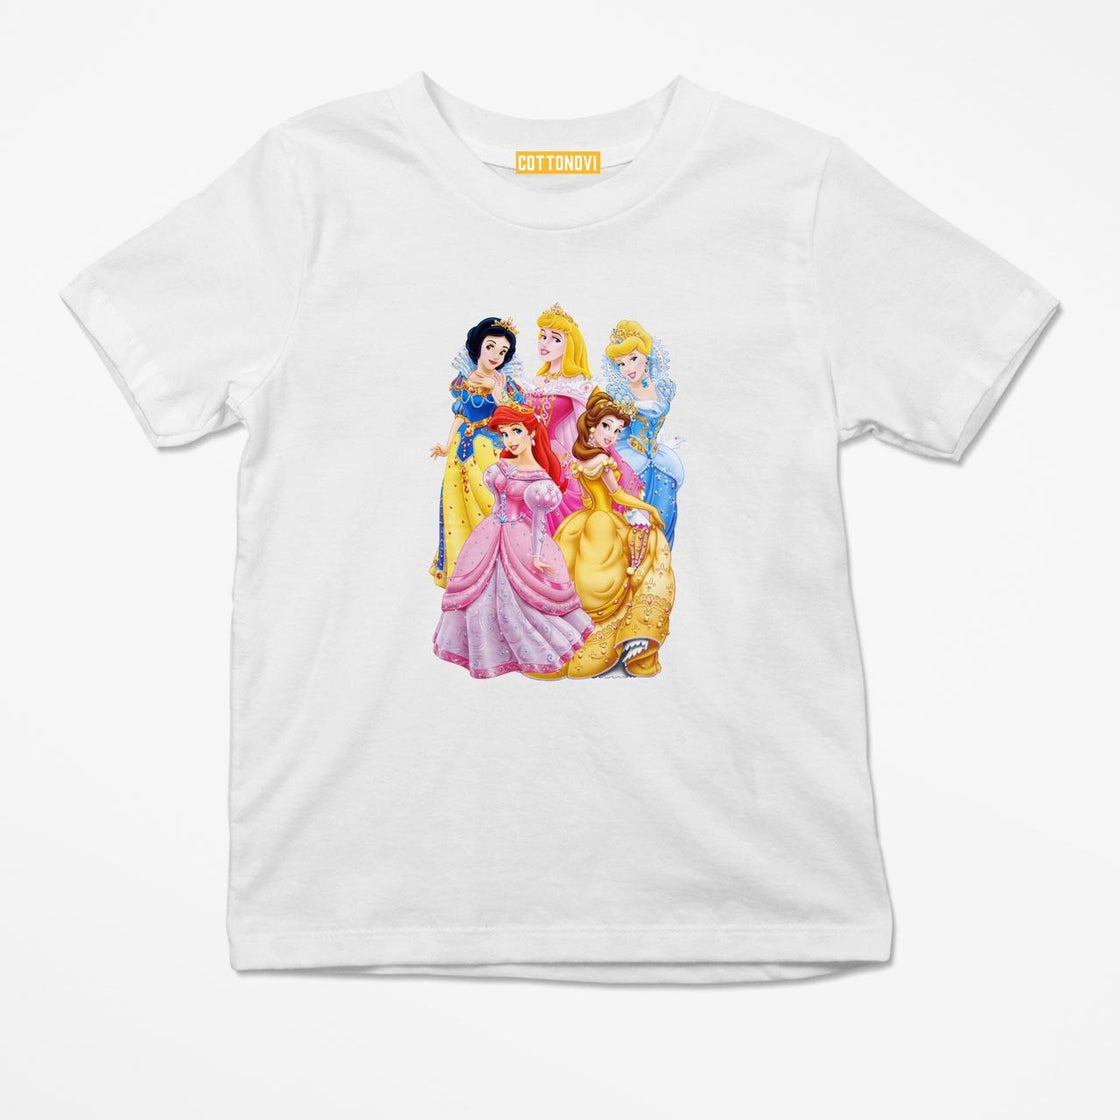 Princess T-shirt